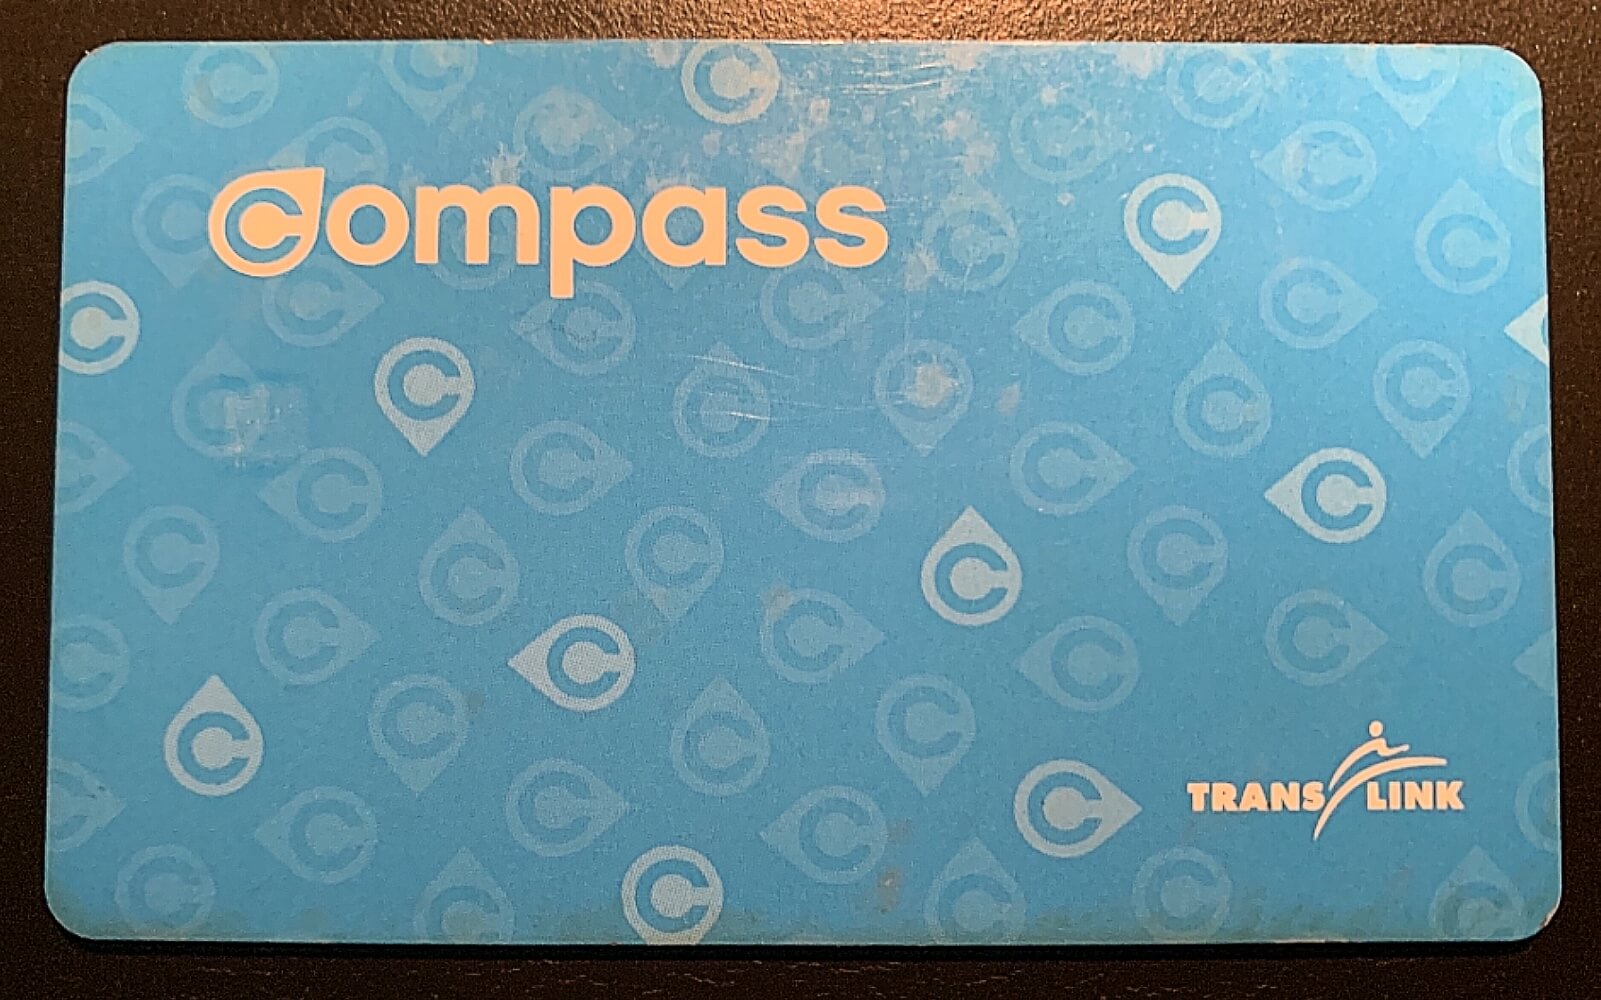 A Compass Card